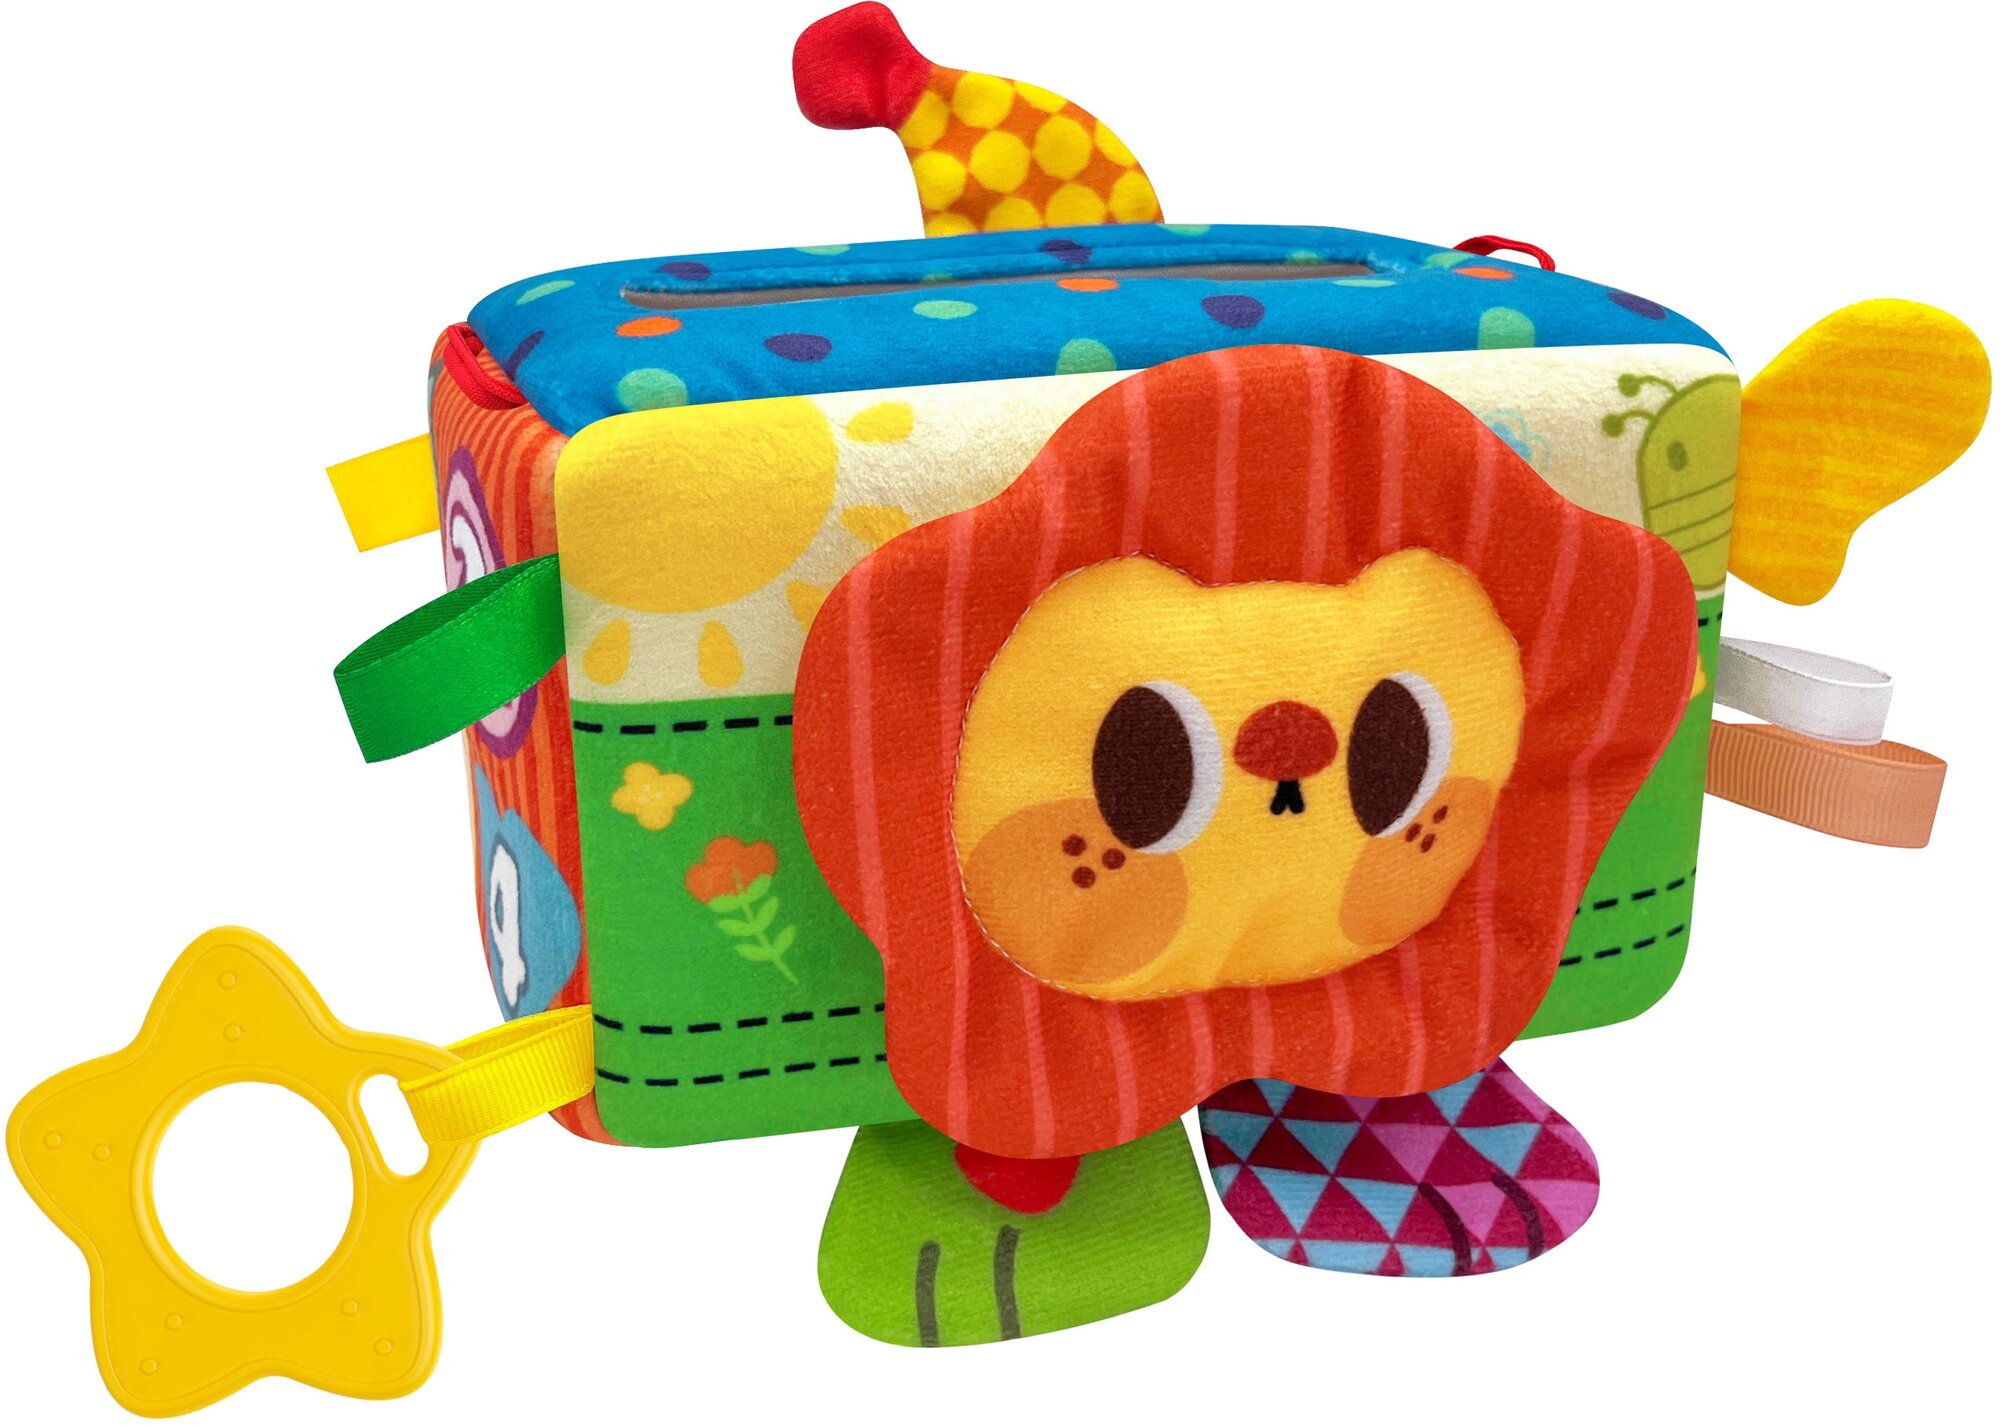 Развивающая игрушка Huanger Мягкий кубик, с погремушкой, зеркальцем, петельками, салфетками, для детей от 18 месяцев